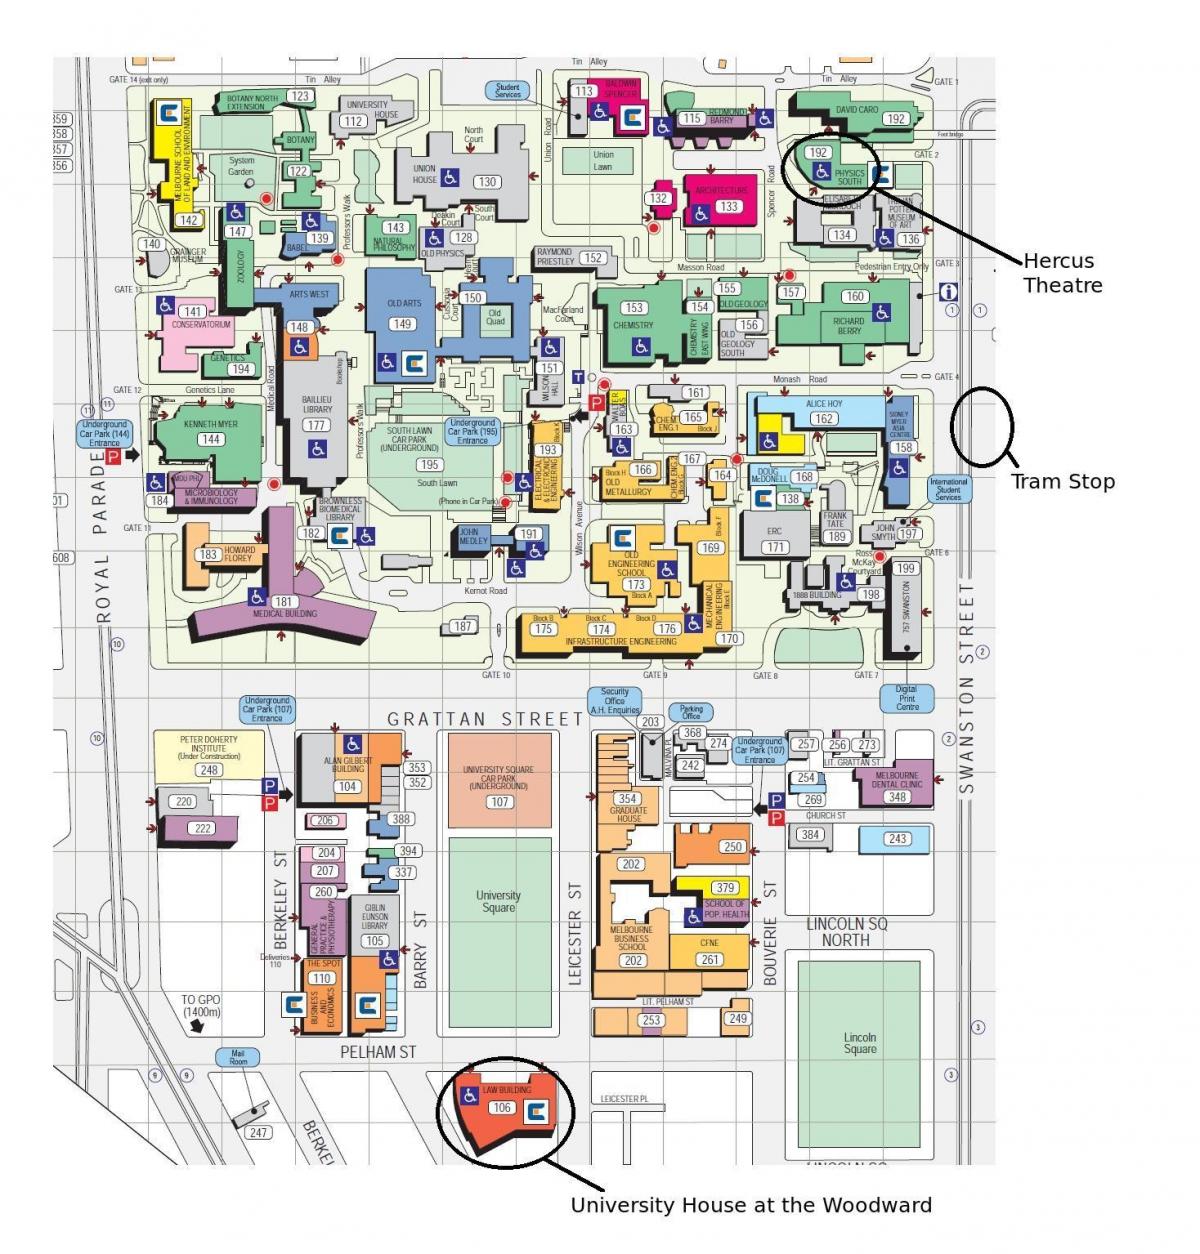 Victoria kampusin e universitetit hartë